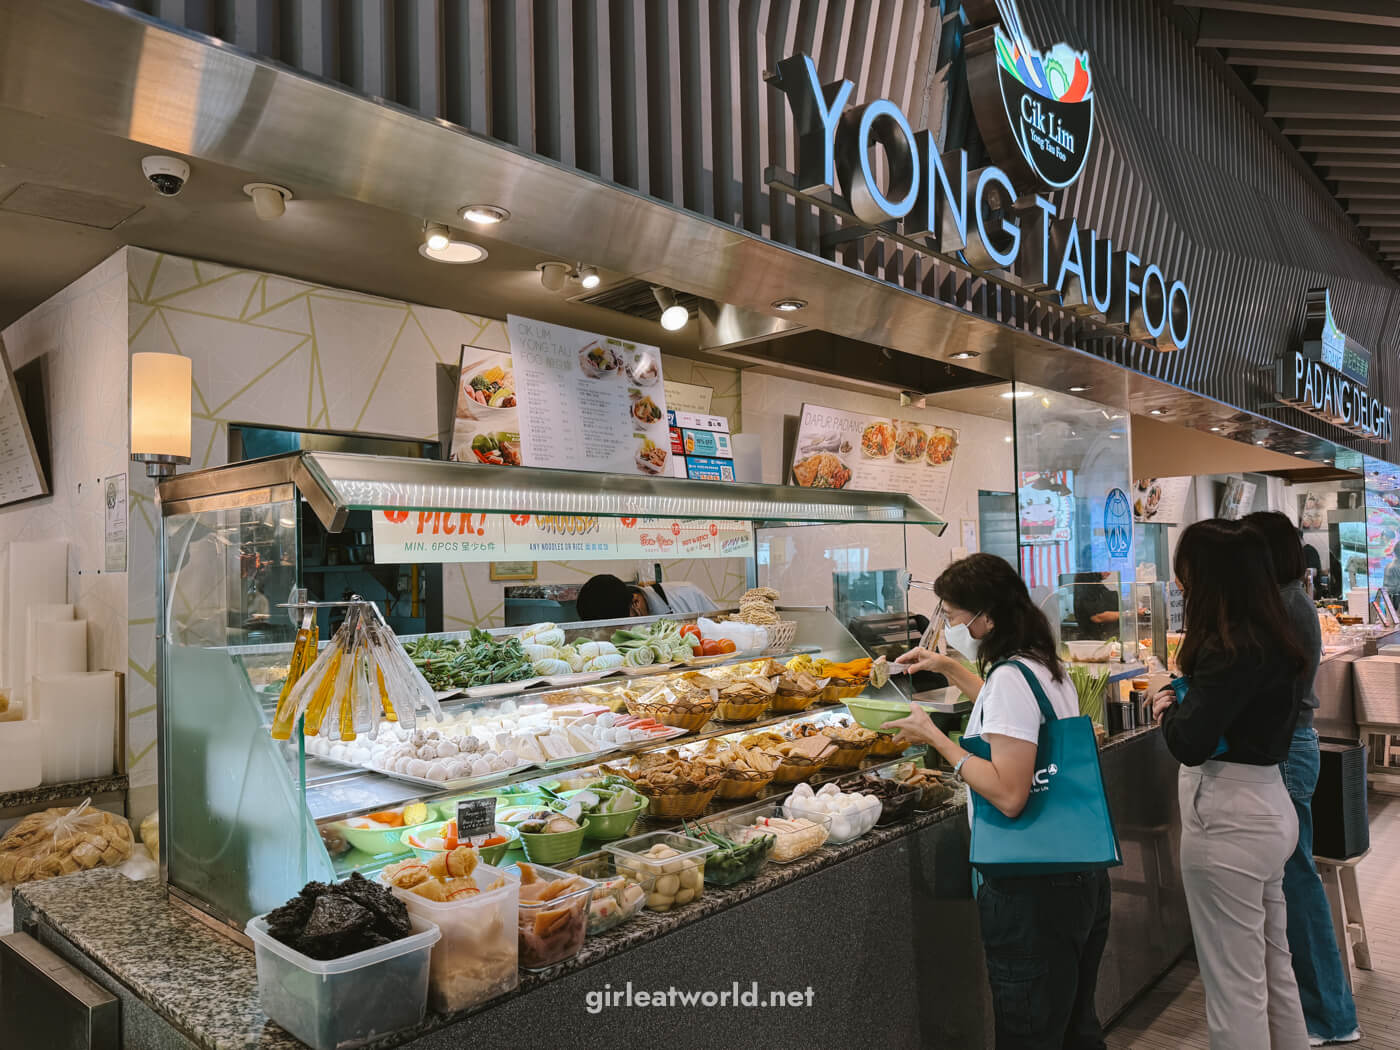 Singapore Food - Yong Tau Foo